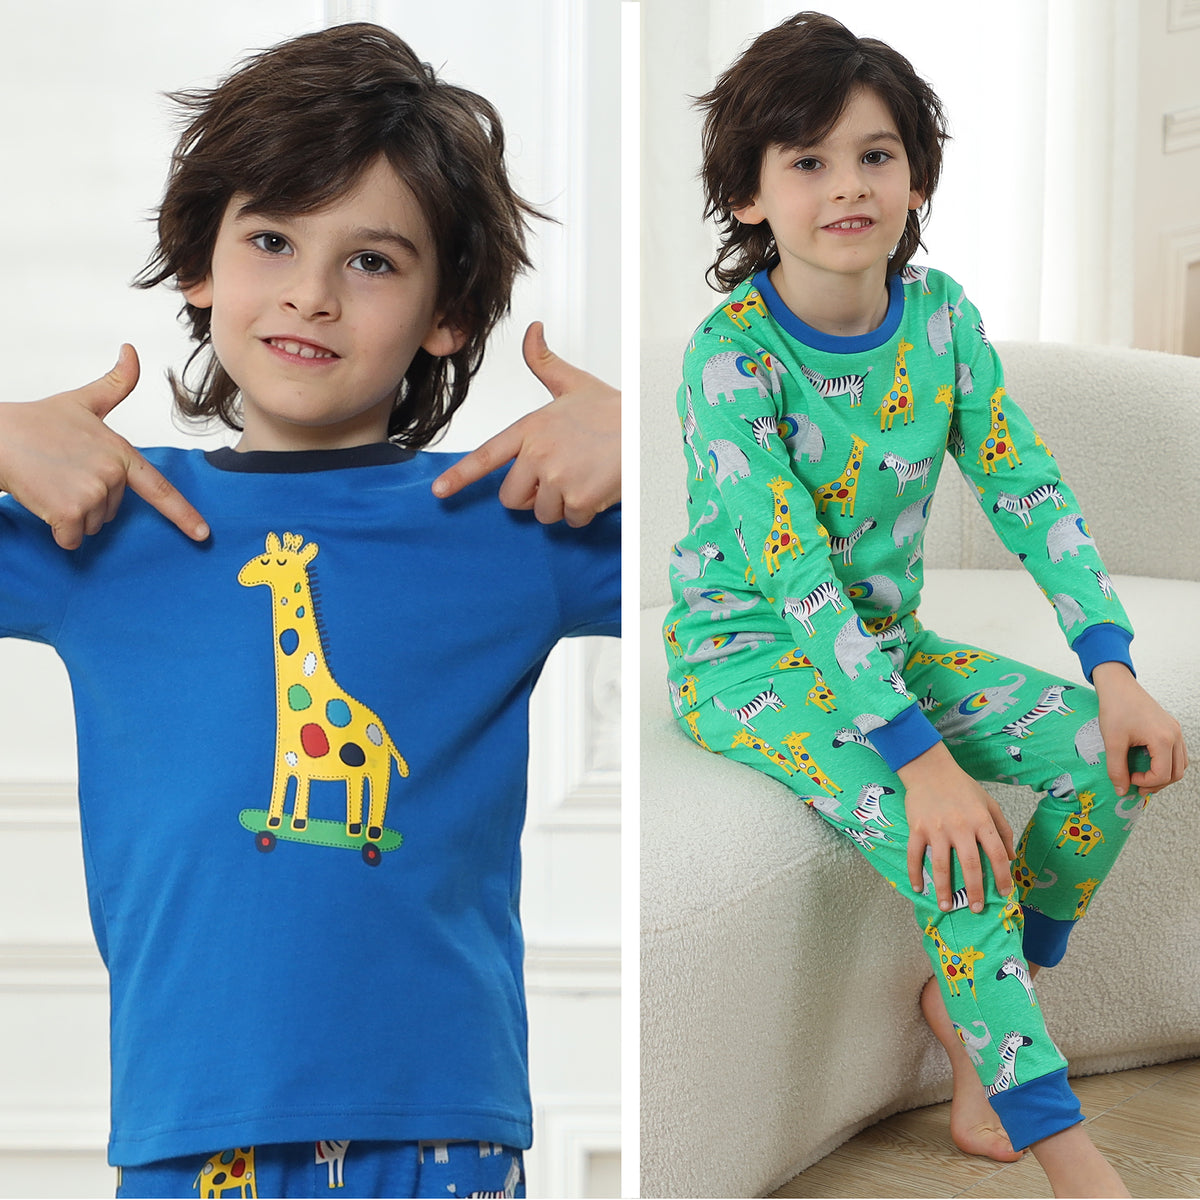 2PK Boys Long Sleeve Bright Animals Pyjamas 